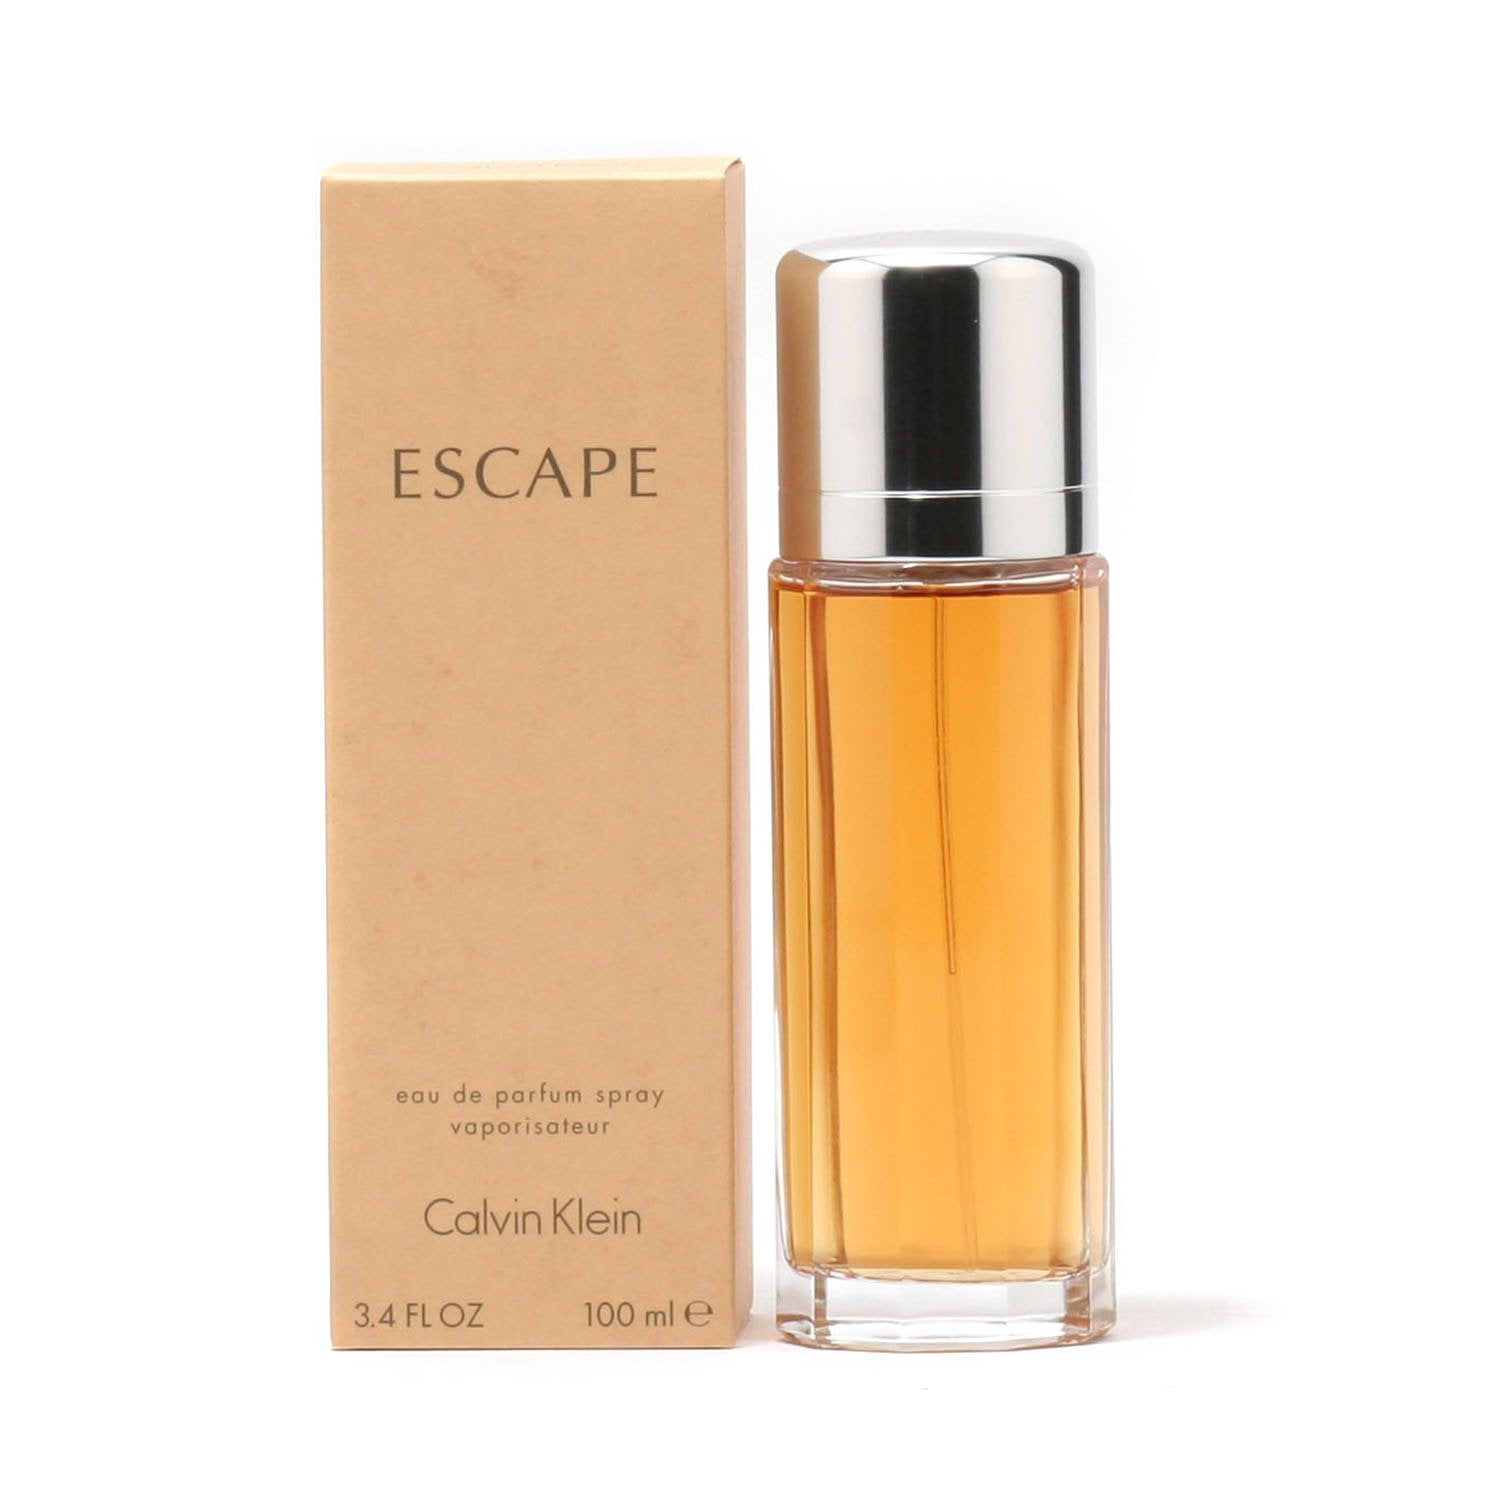 Perfume - ESCAPE FOR WOMEN BY CALVIN KLEIN - EAU DE PARFUM SPRAY